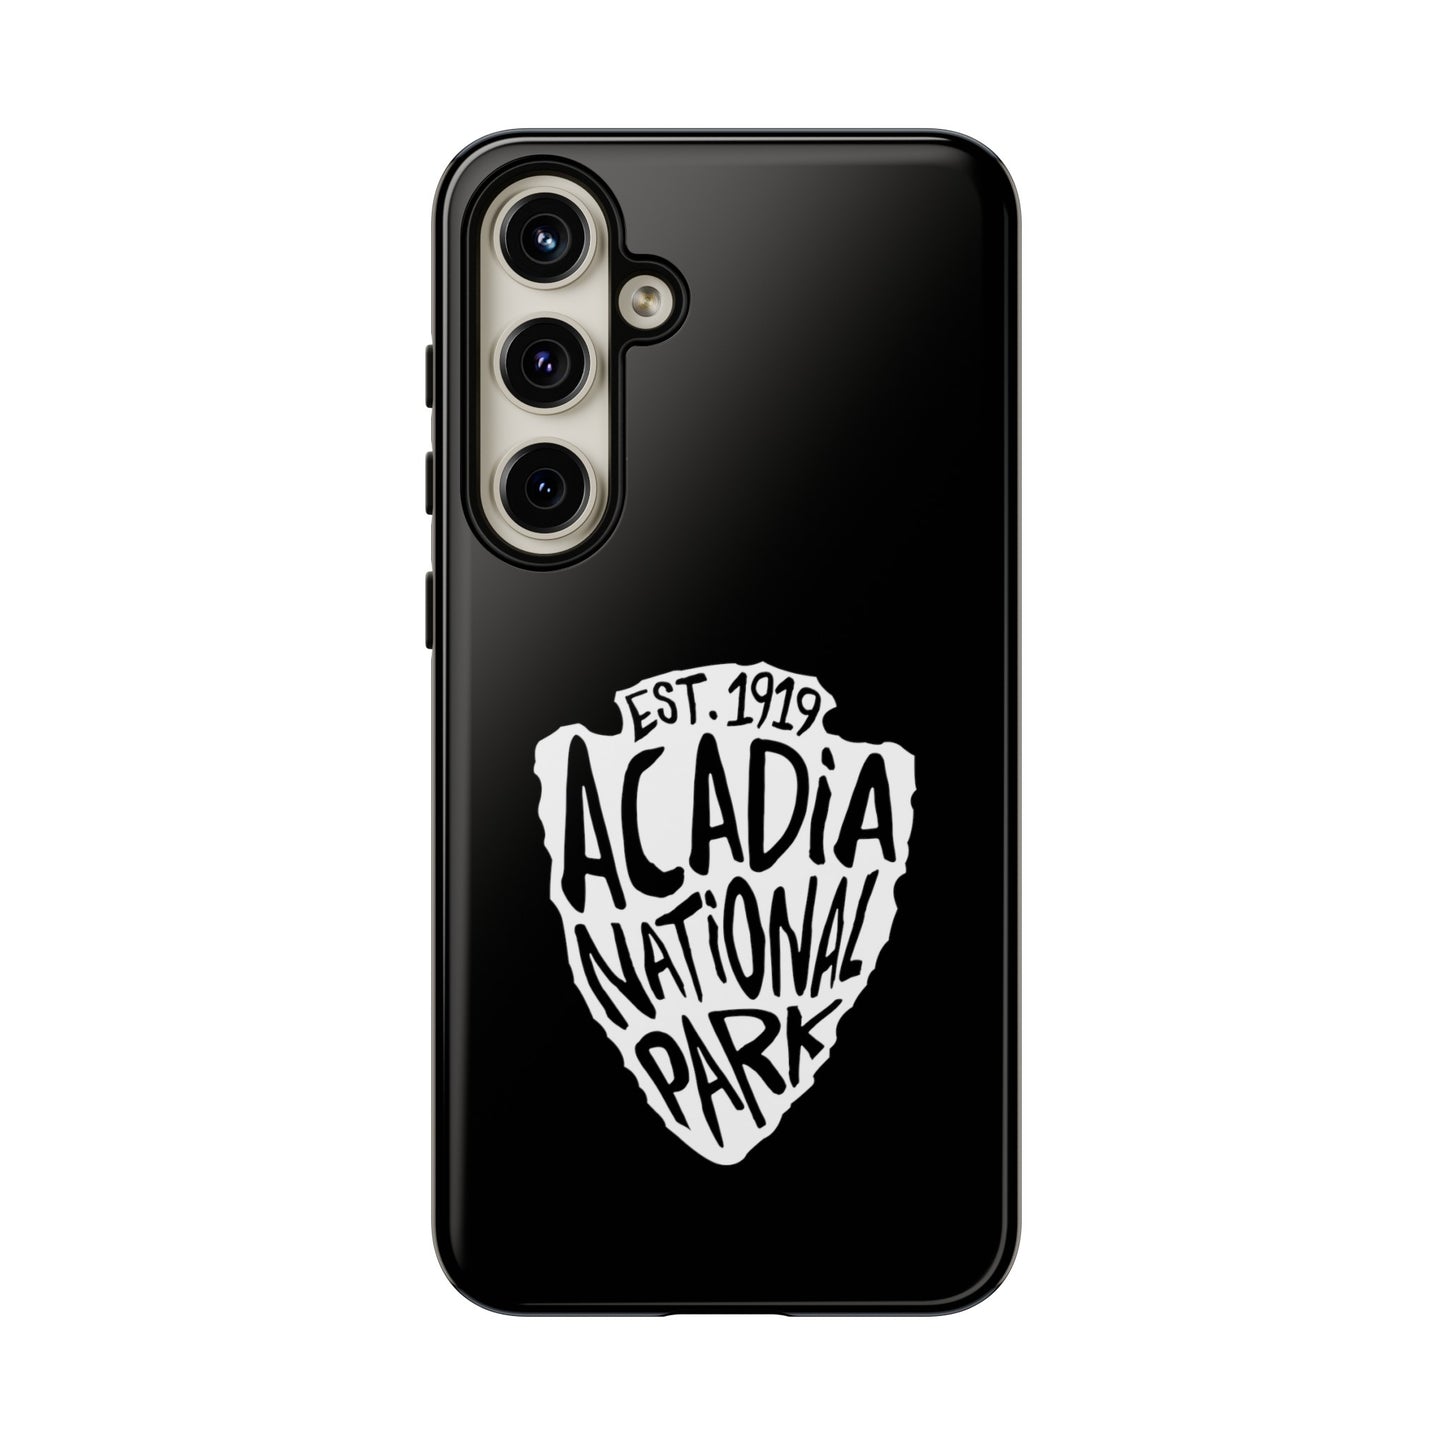 Acadia National Park Phone Case - Arrowhead Design